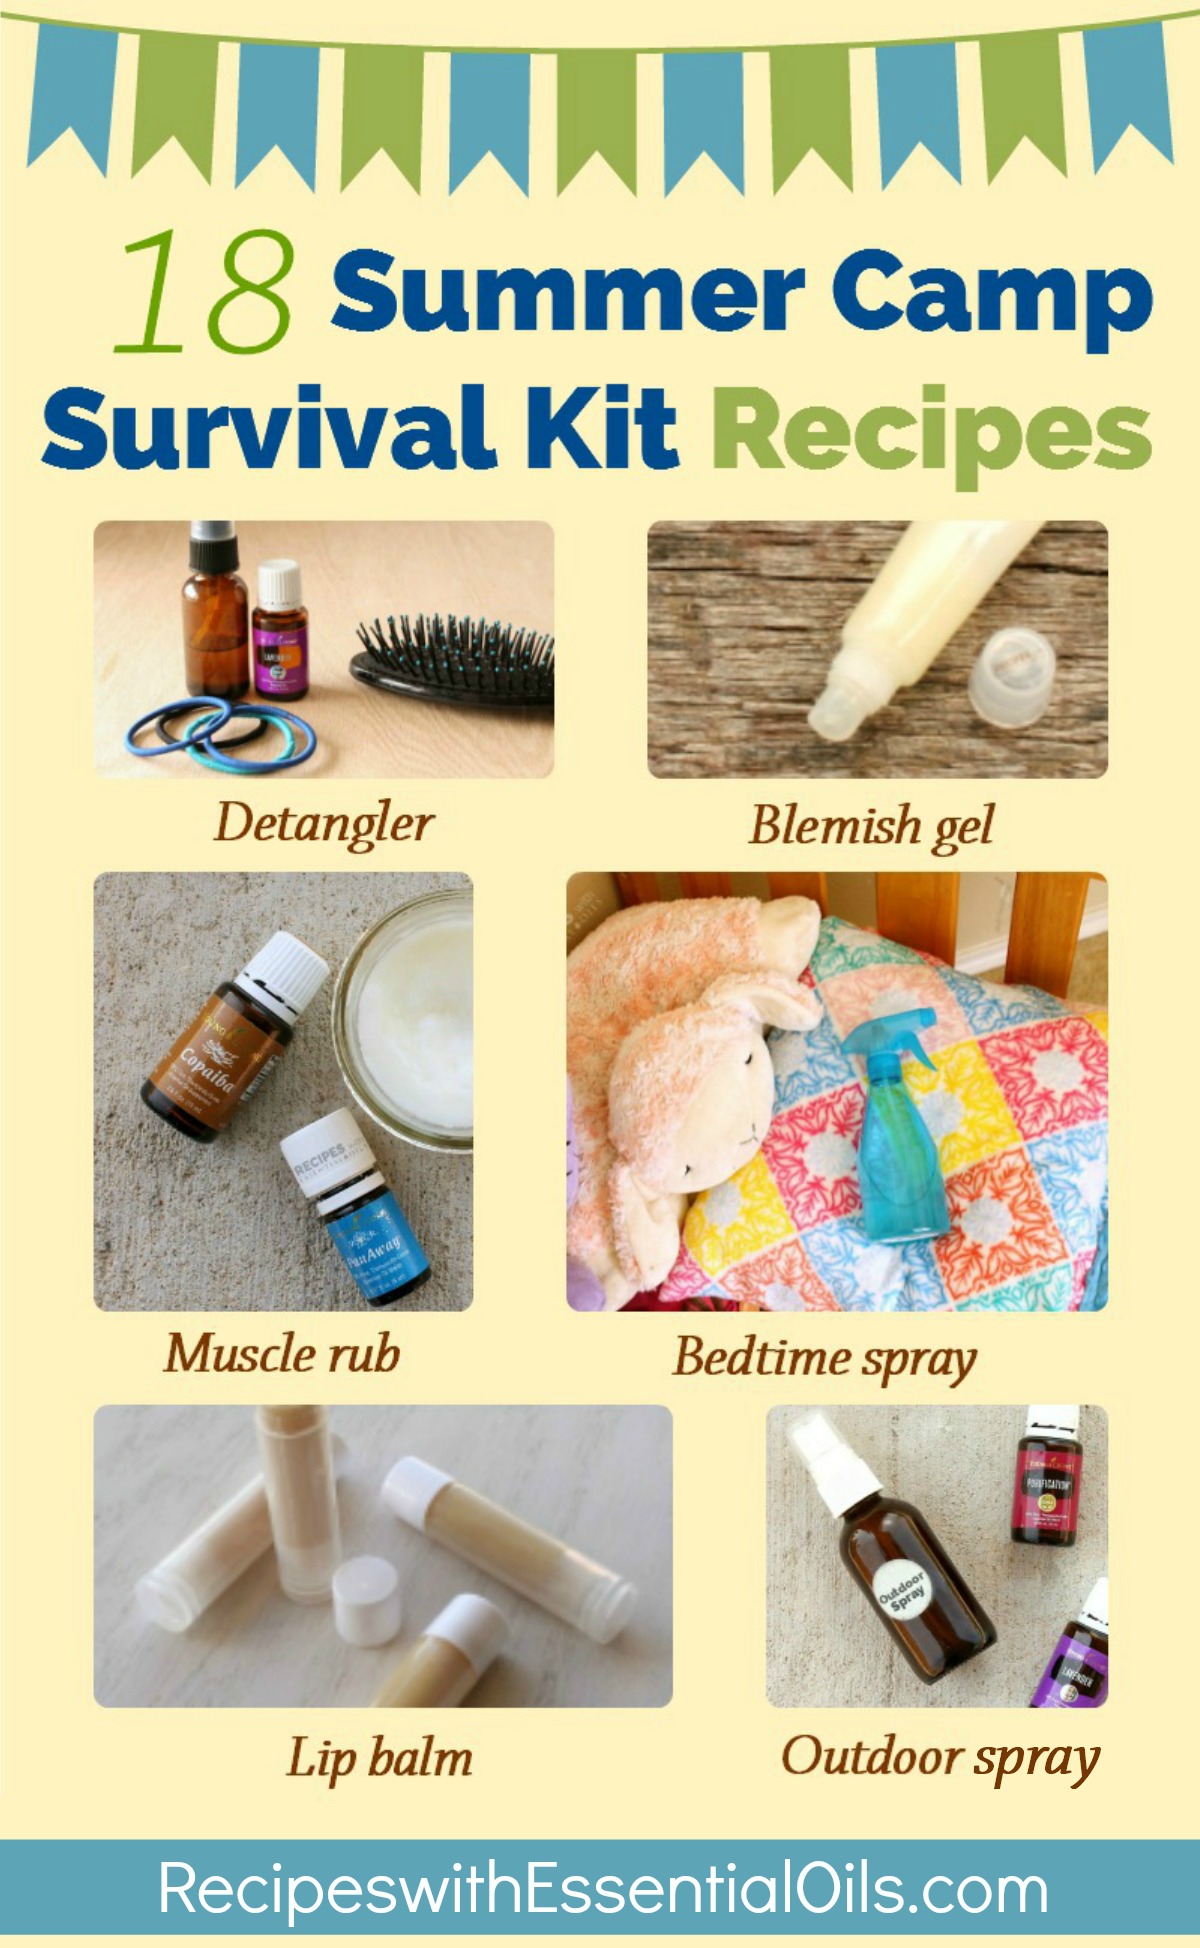 18 recetas de kits de supervivencia para campamentos de verano de RecipeswithEssentialOils.com